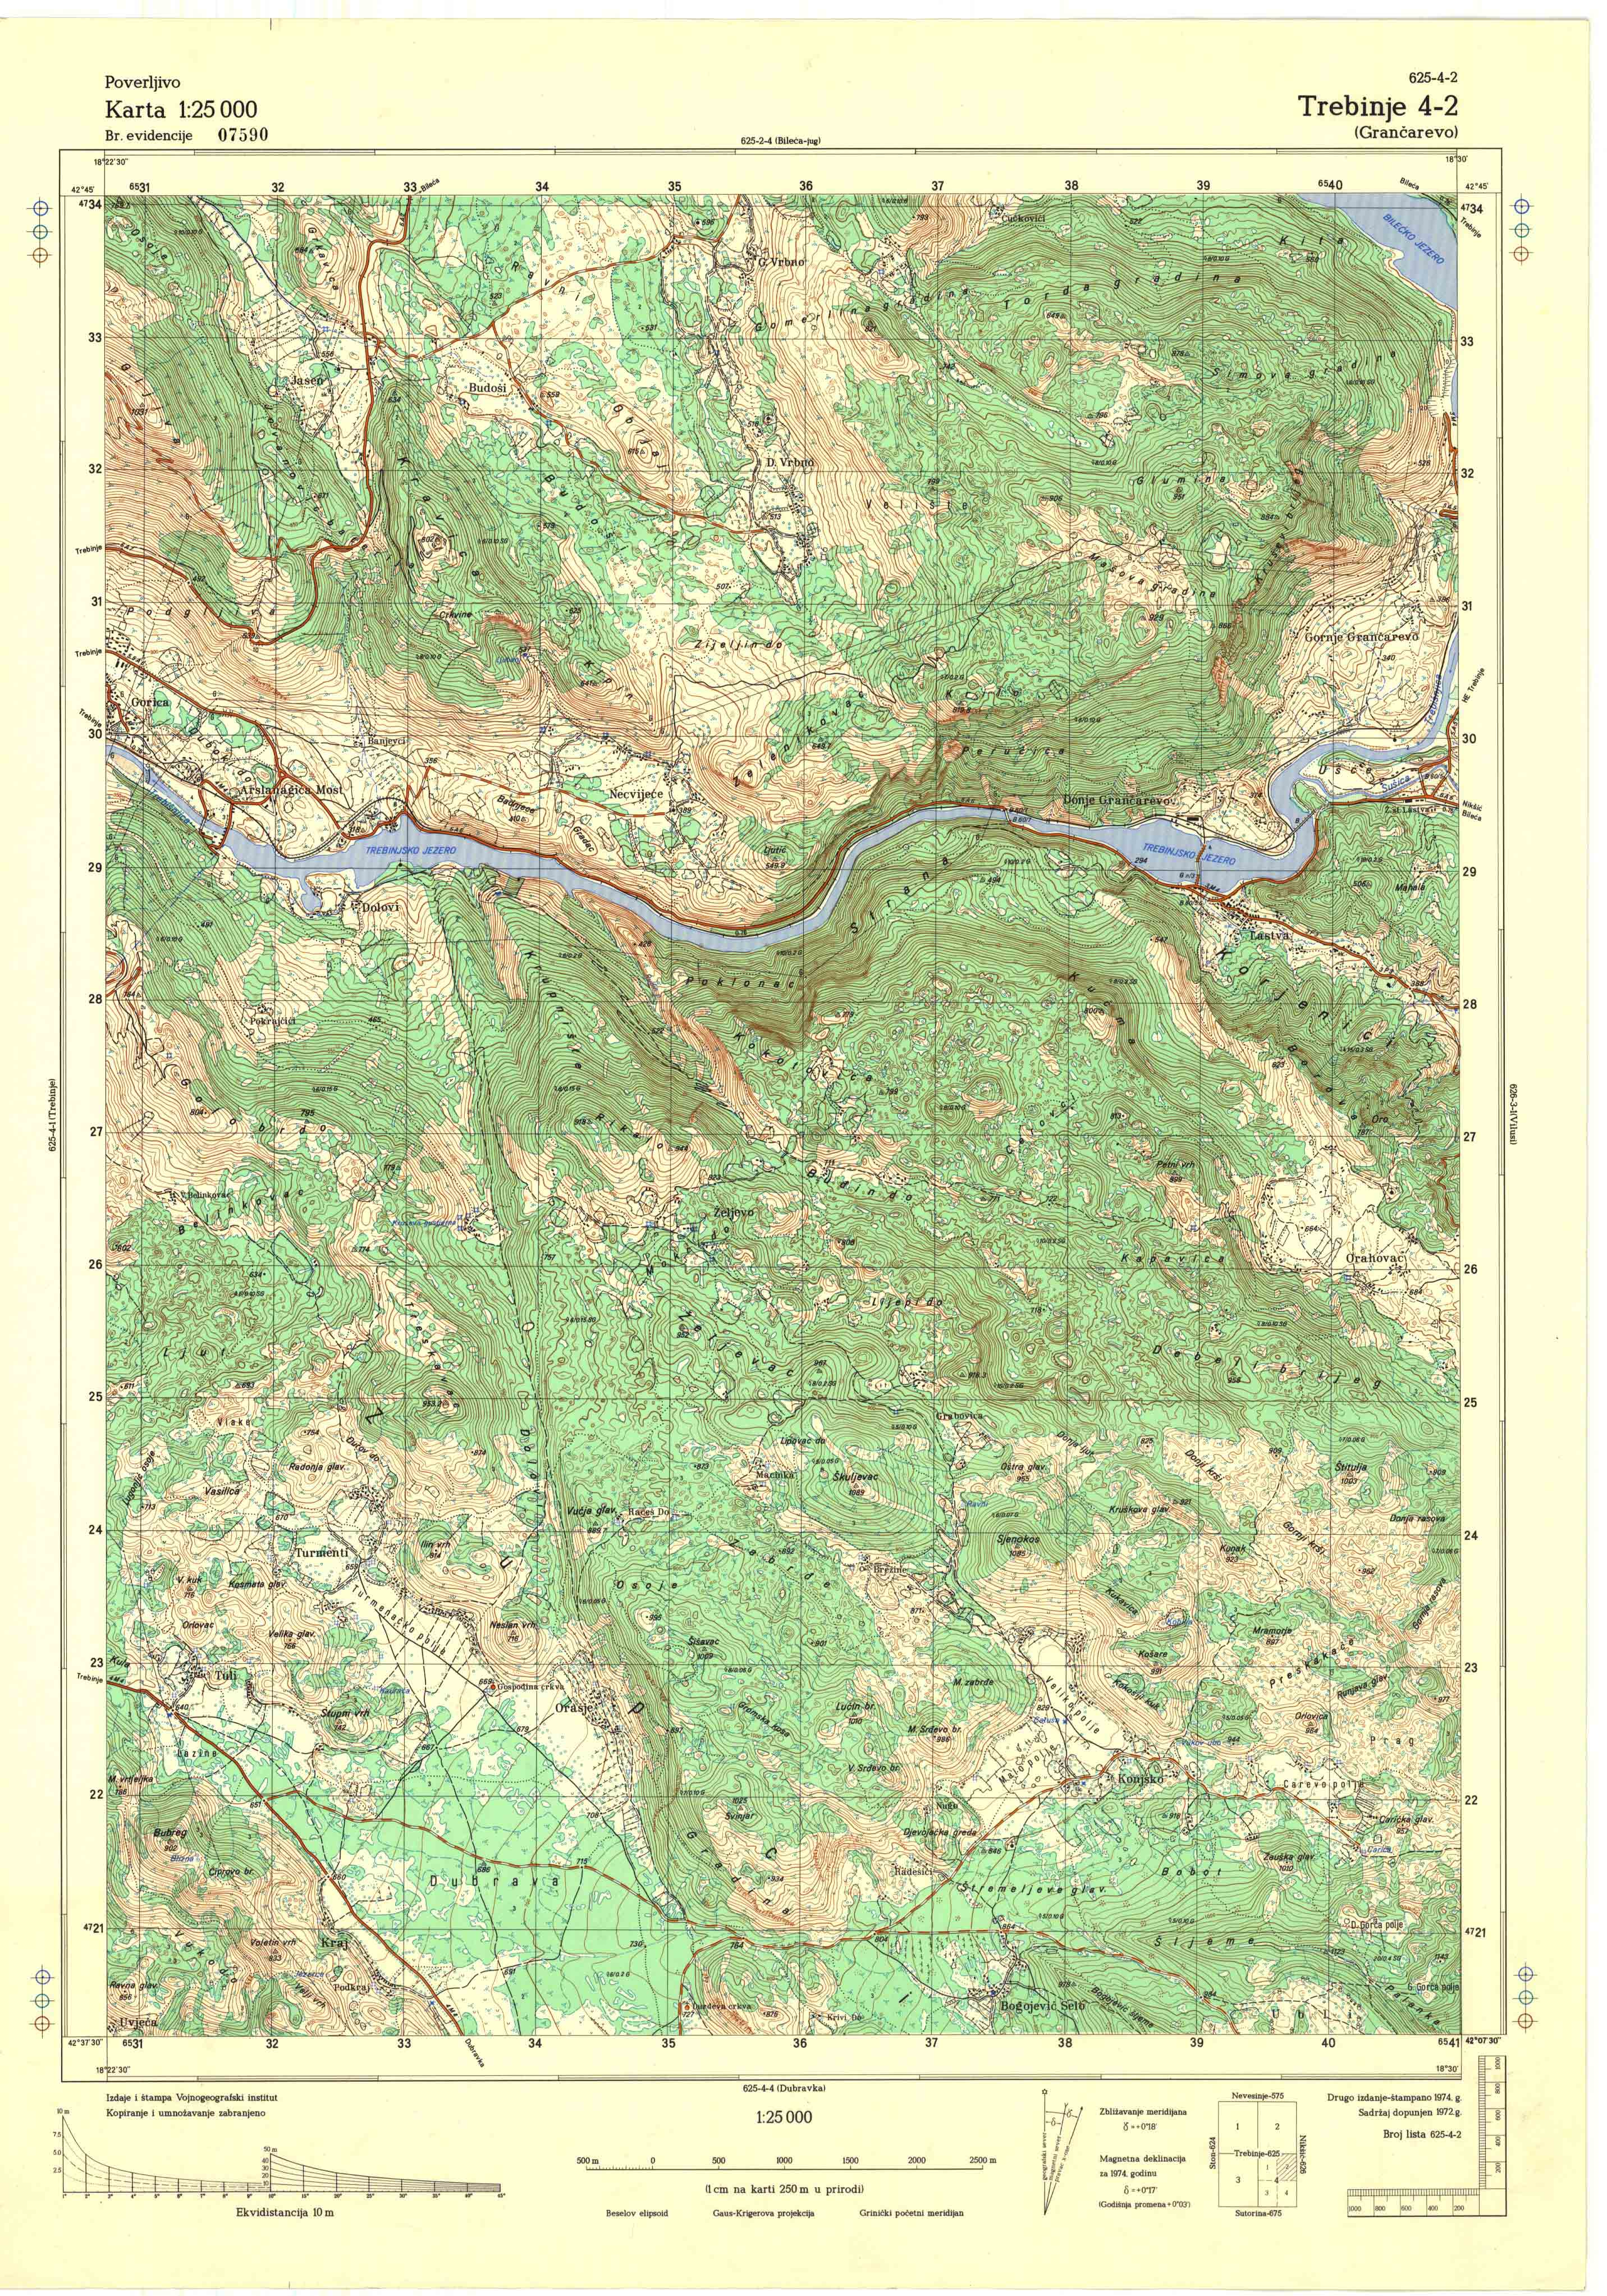  topografska karta srbije 25000 JNA  Trebinje